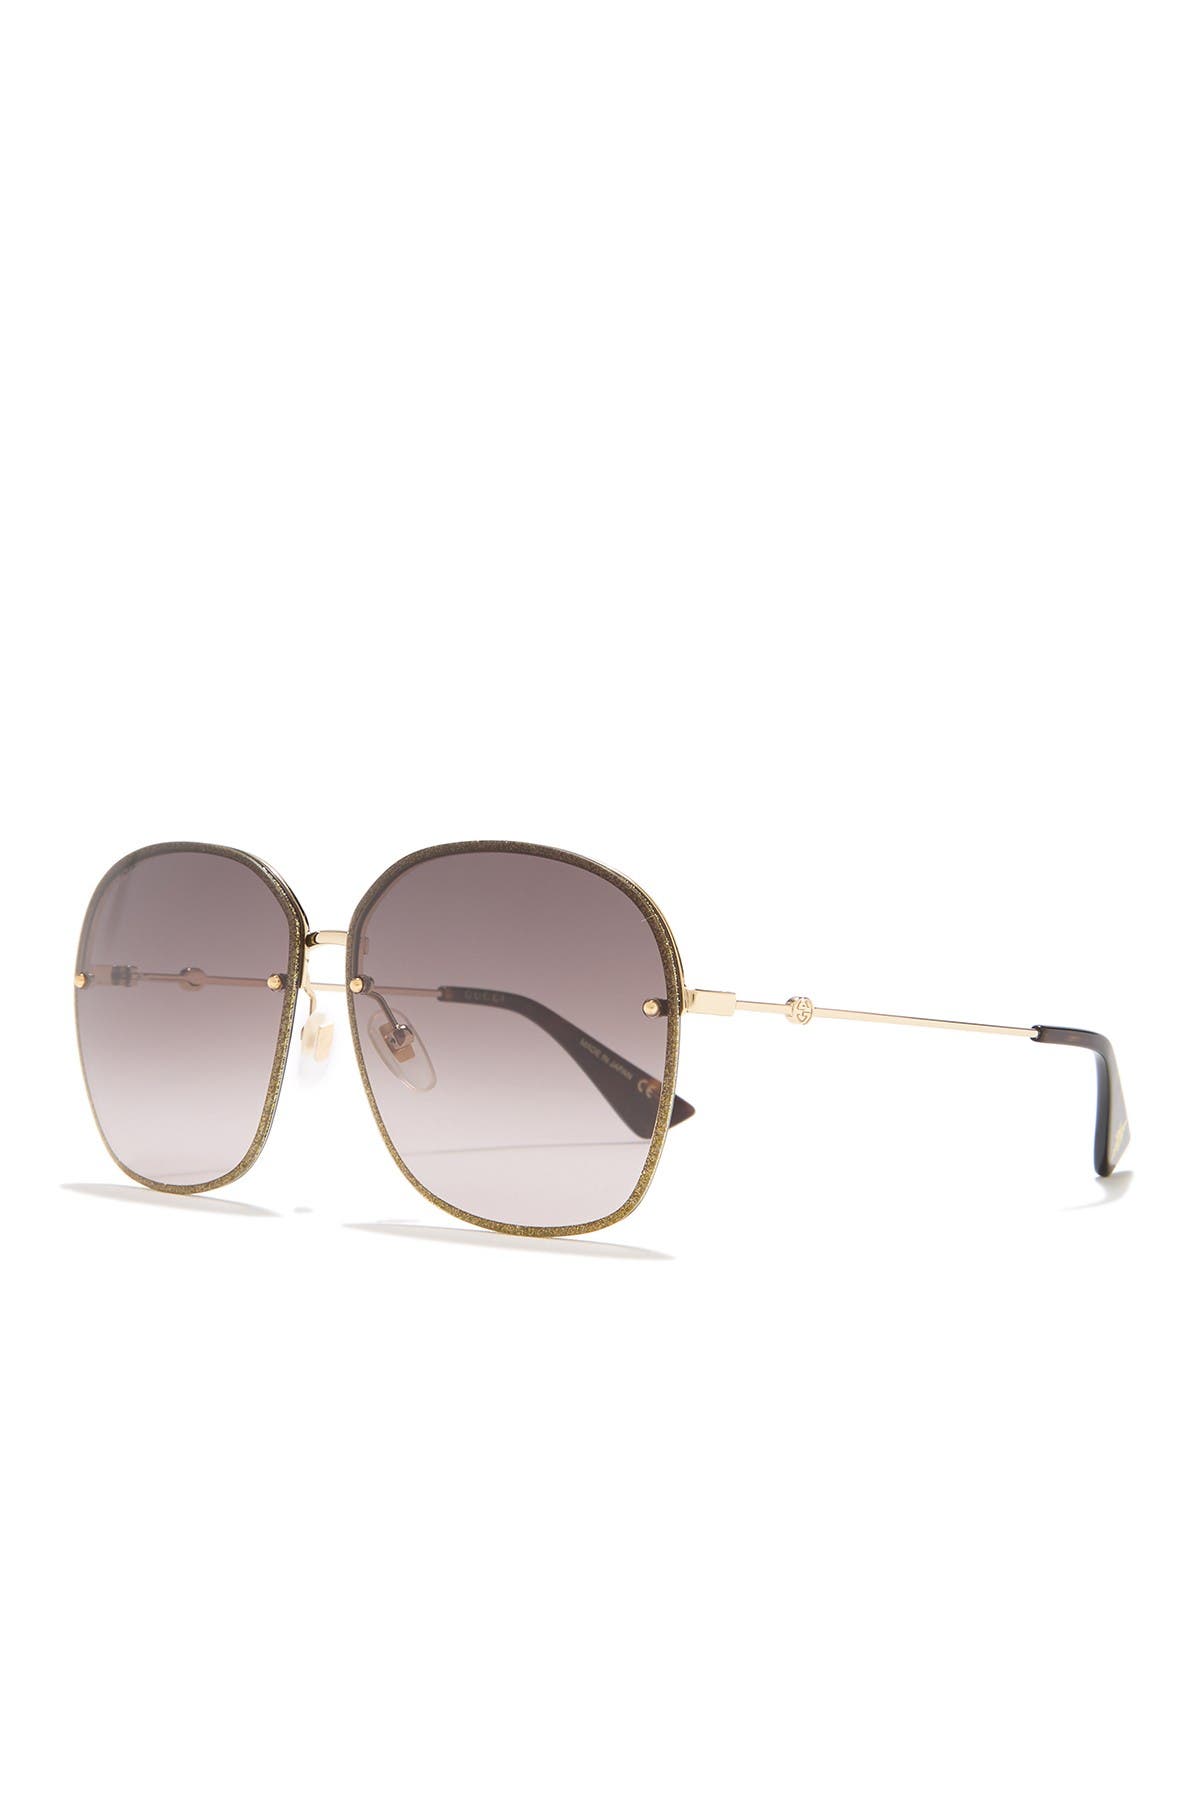 Gucci 63mm Modified Aviator Sunglasses In Gold1